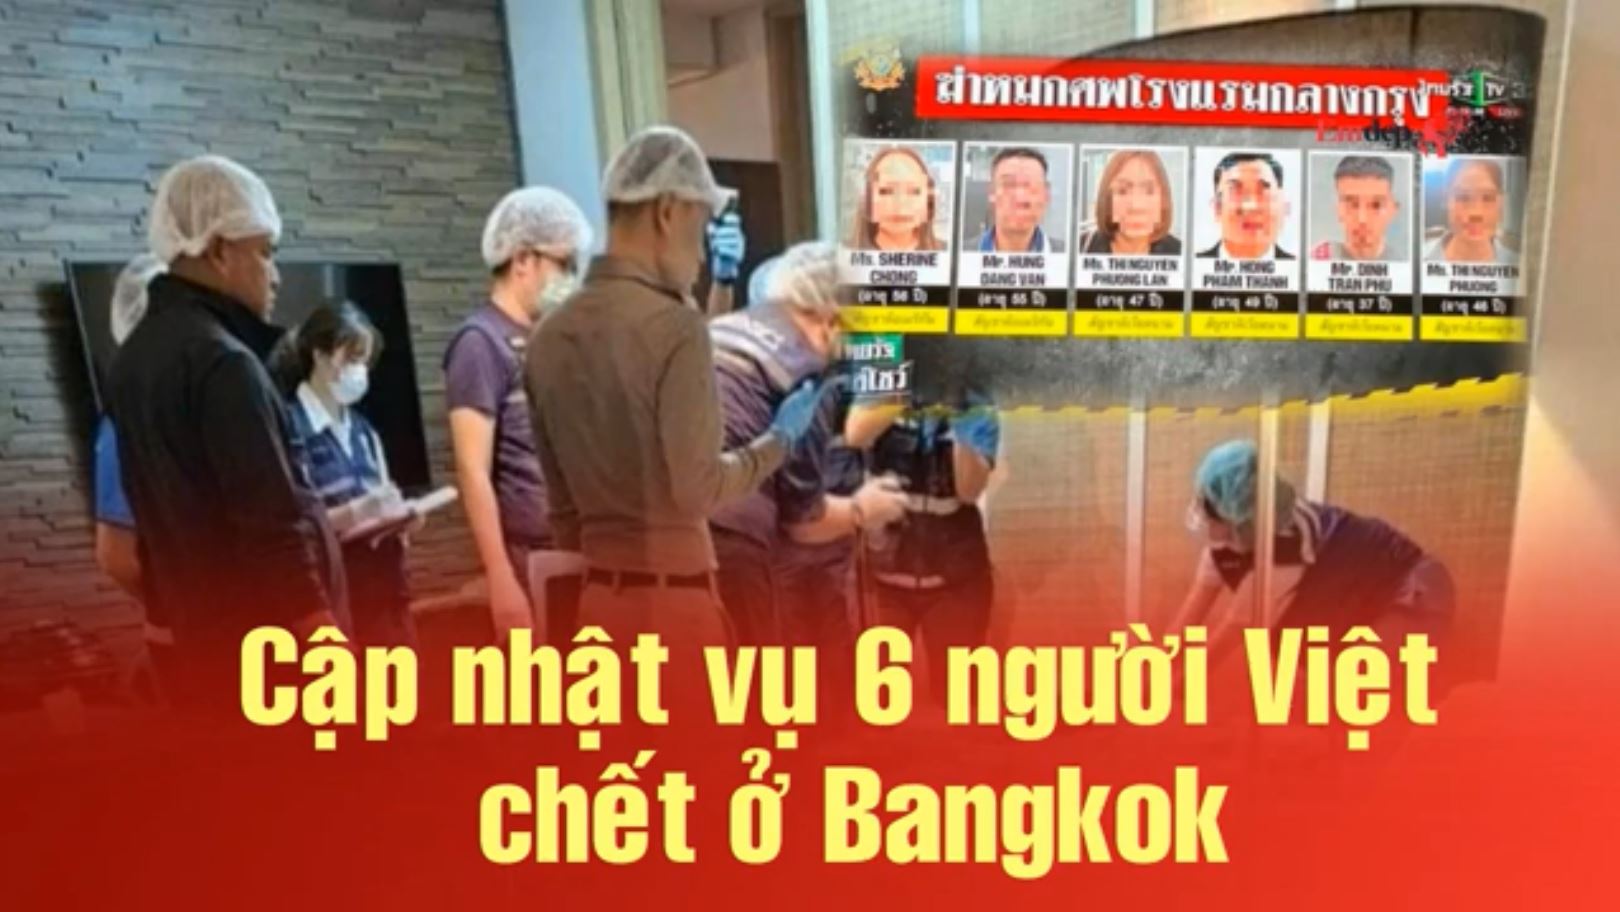 Cập nhật vụ 6 người Việt C.H.Ế.T ở Bangkok